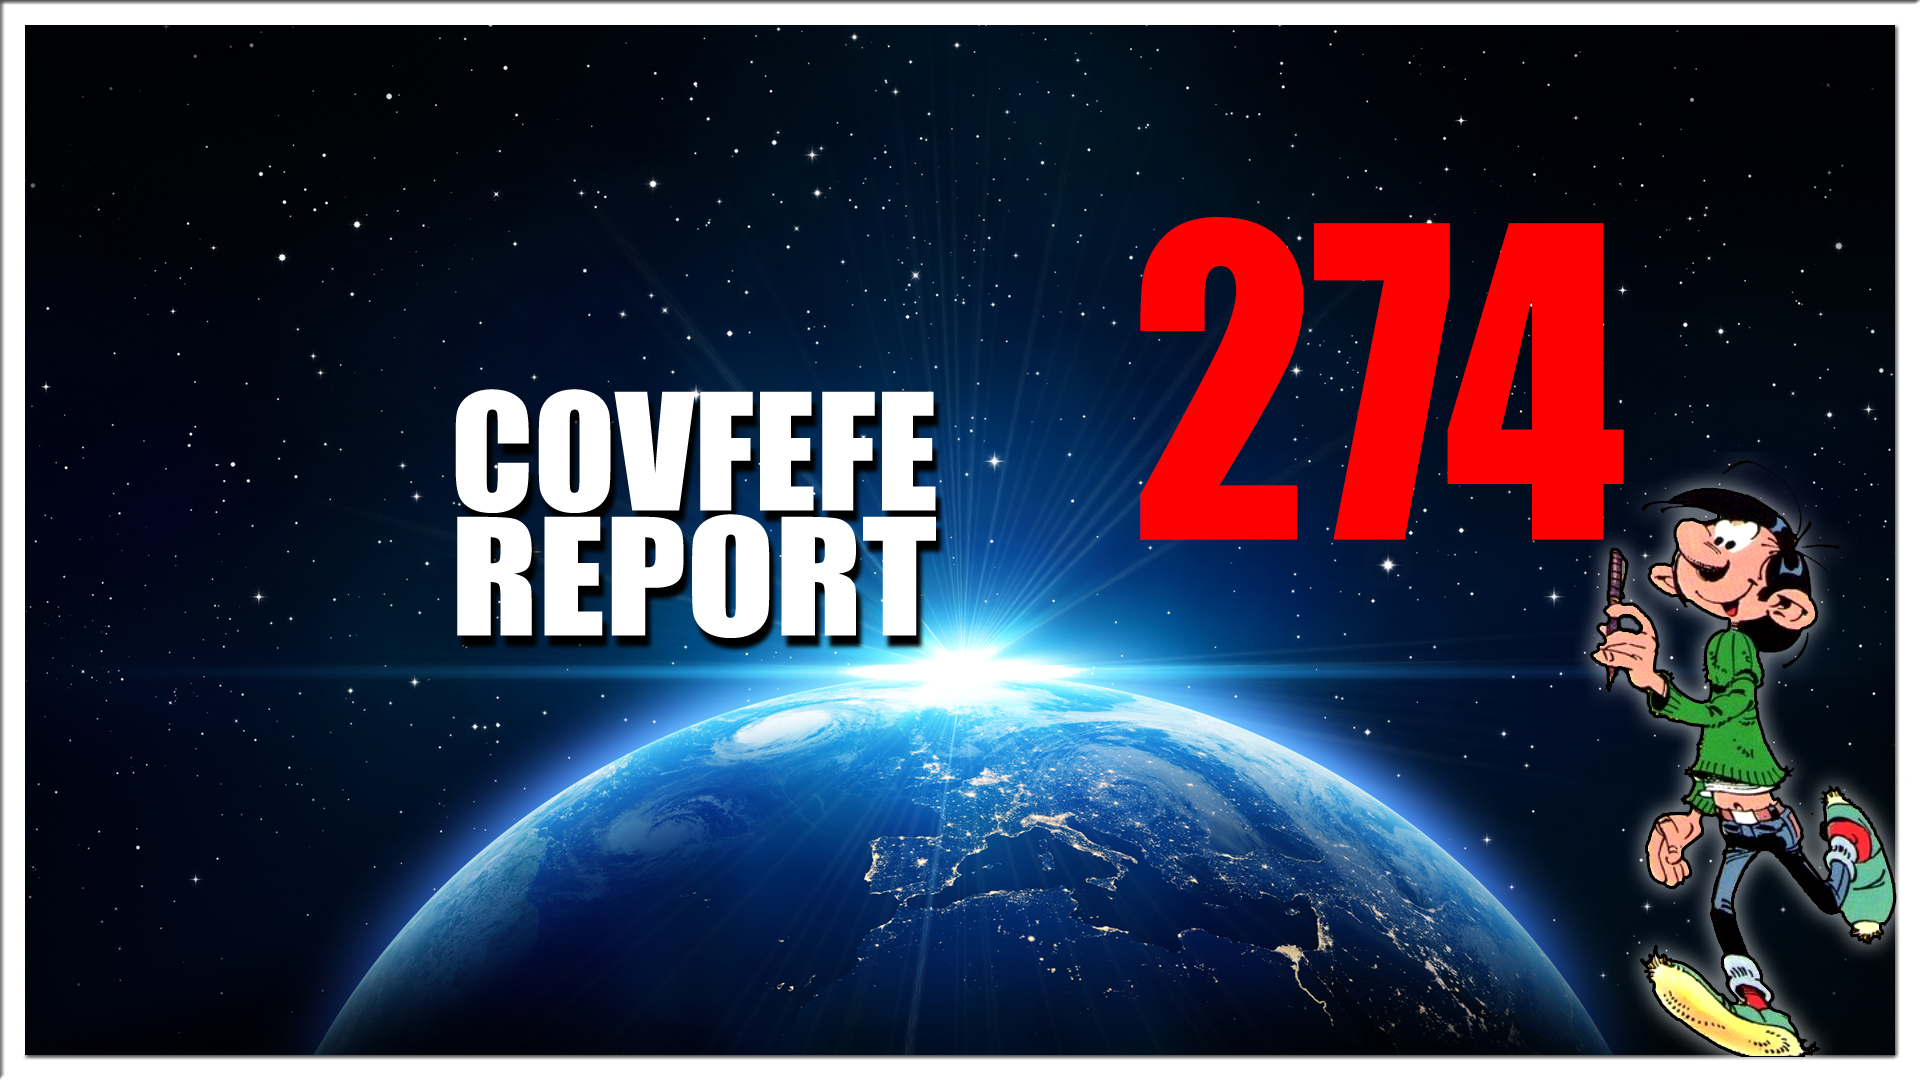 Covfefe Report 274. Operatie #DisneyGate is begonnen, #SaveOurChildren